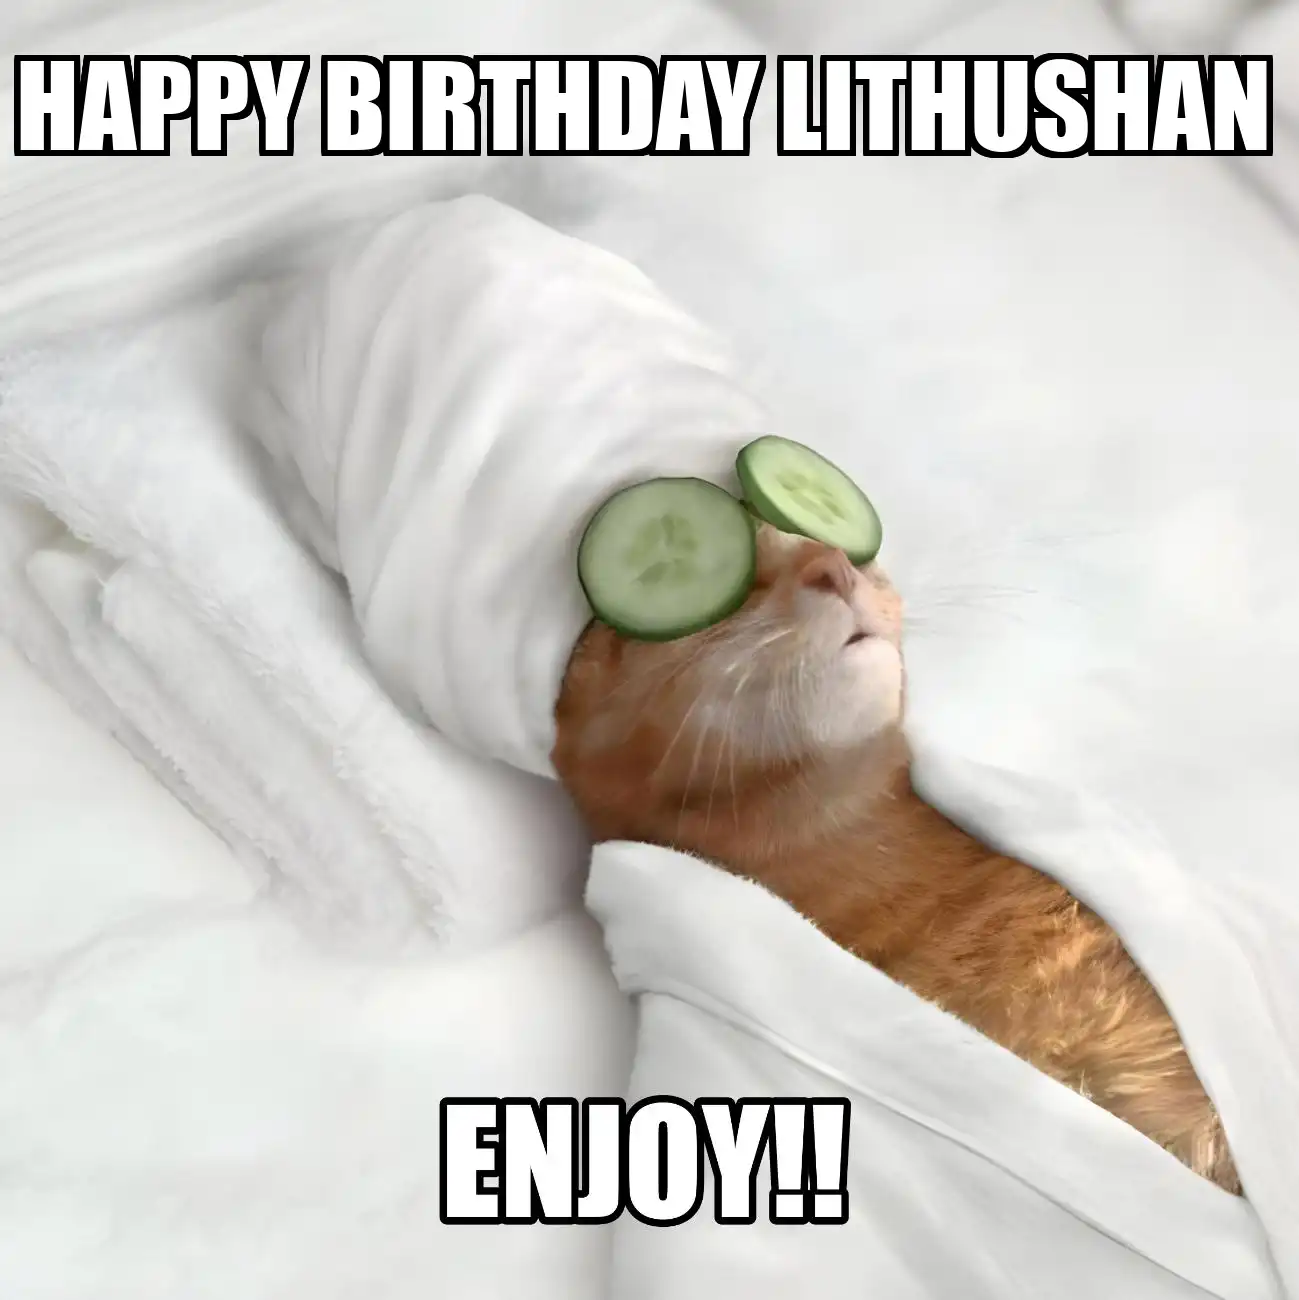 Happy Birthday Lithushan Enjoy Cat Meme